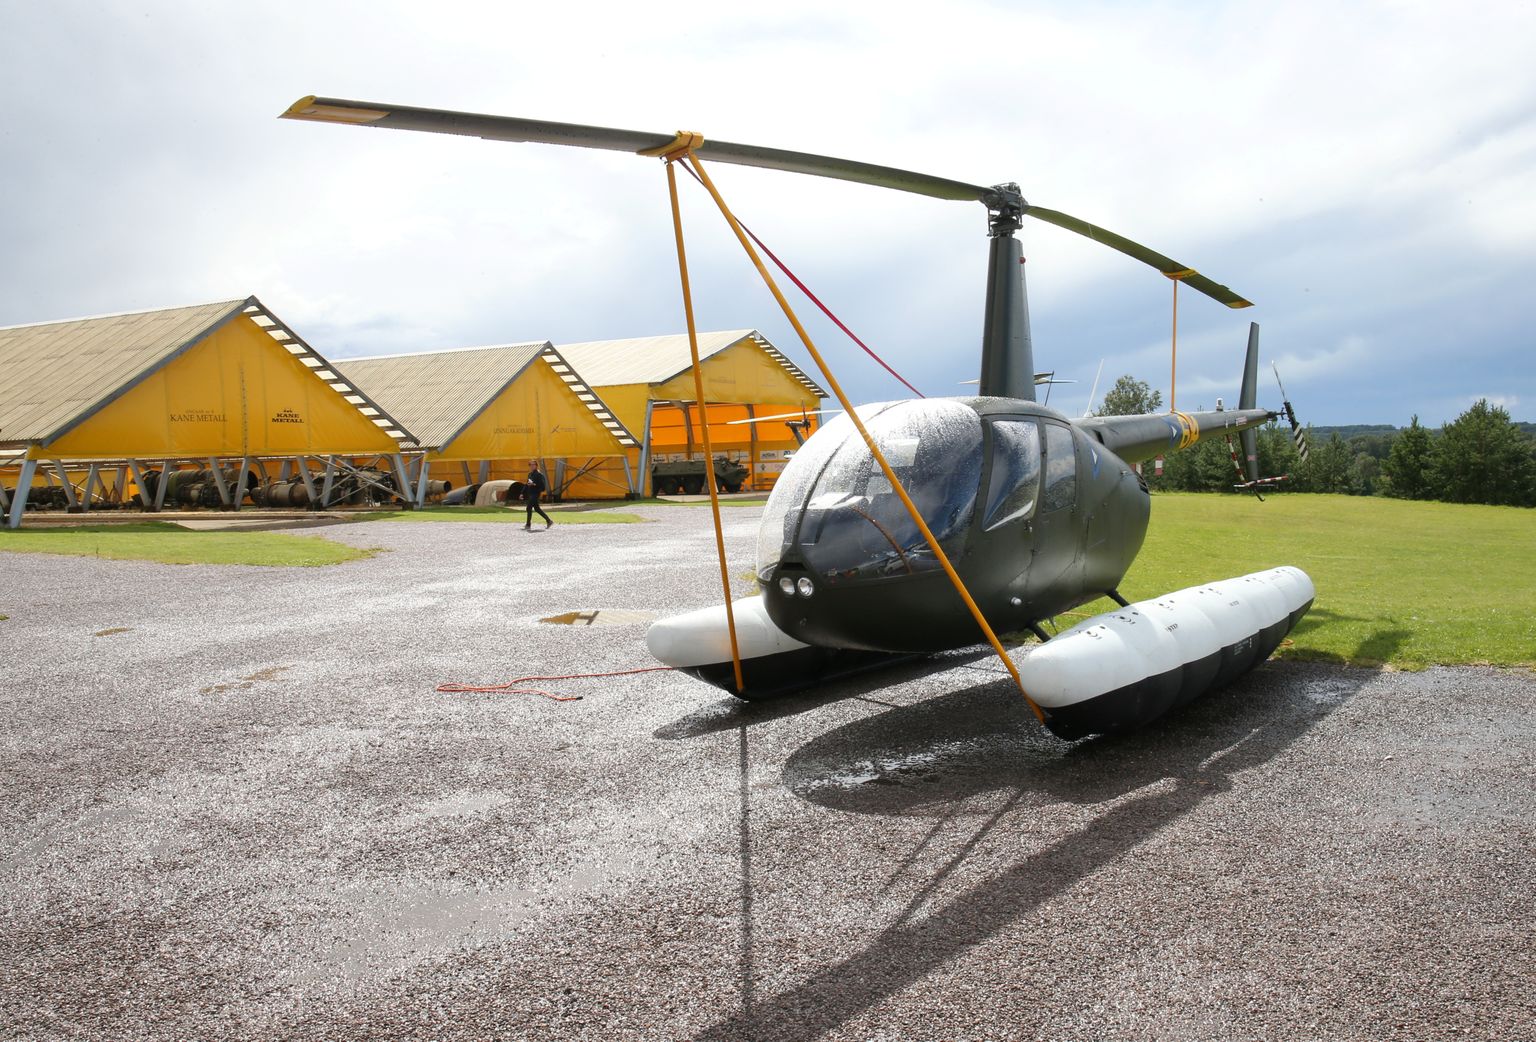 Eesti õhuväe ainuke ujukitega helikopter lõpetas teenistuse ja ootab huvilisi Tartu lähistel Eesti lennundusmuuseumis. Sellel aastal lõpetavad teenistuse ka ülejäänud kolm õhuväe helikopterit